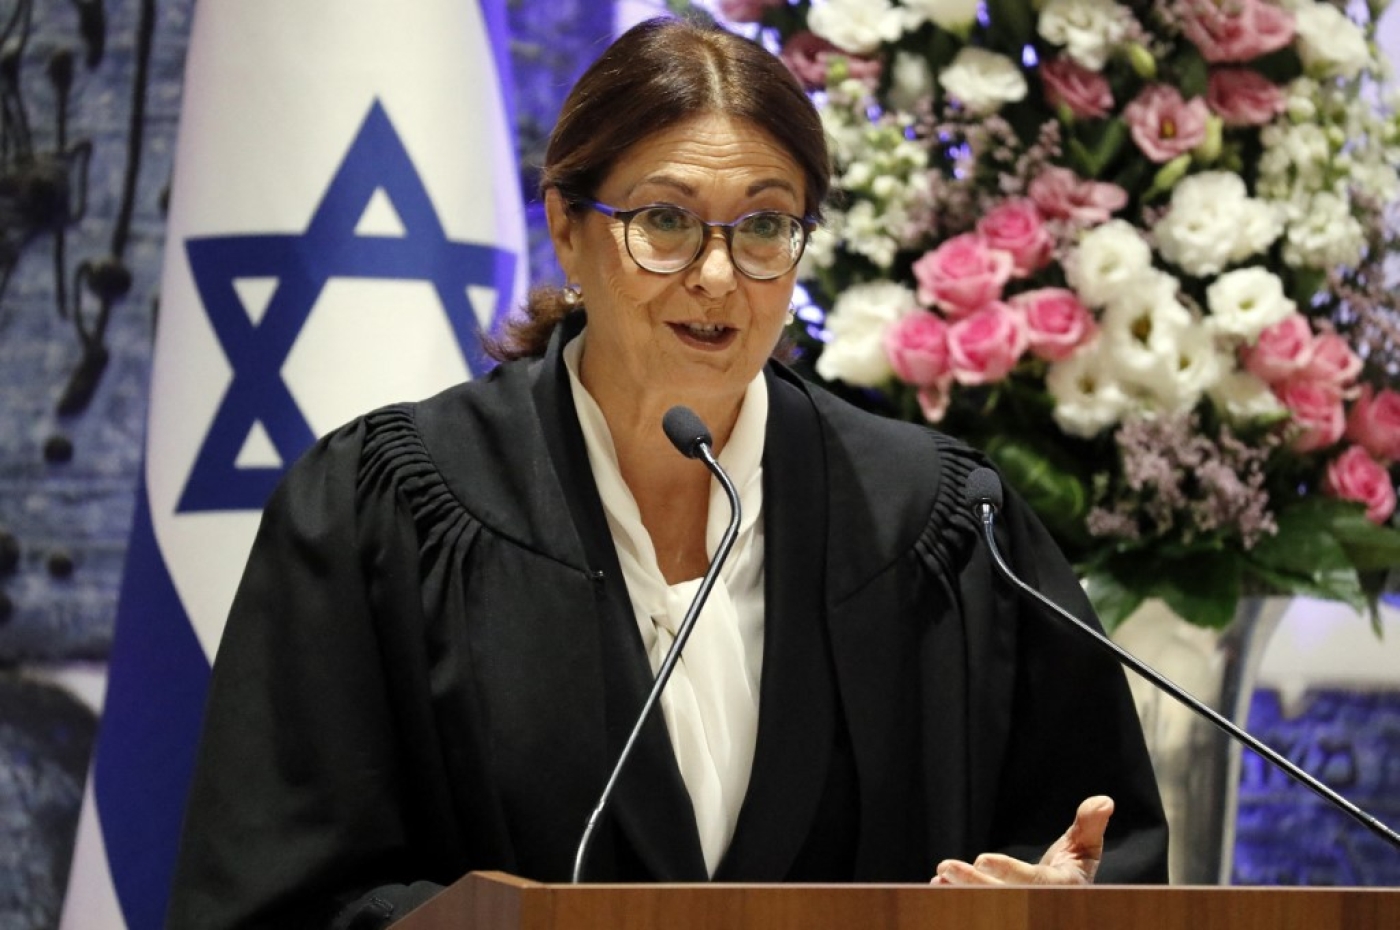 Israeli president of the Supreme Court, Esther Hayut, delivering a speech in Jerusalem. (AFP/file)